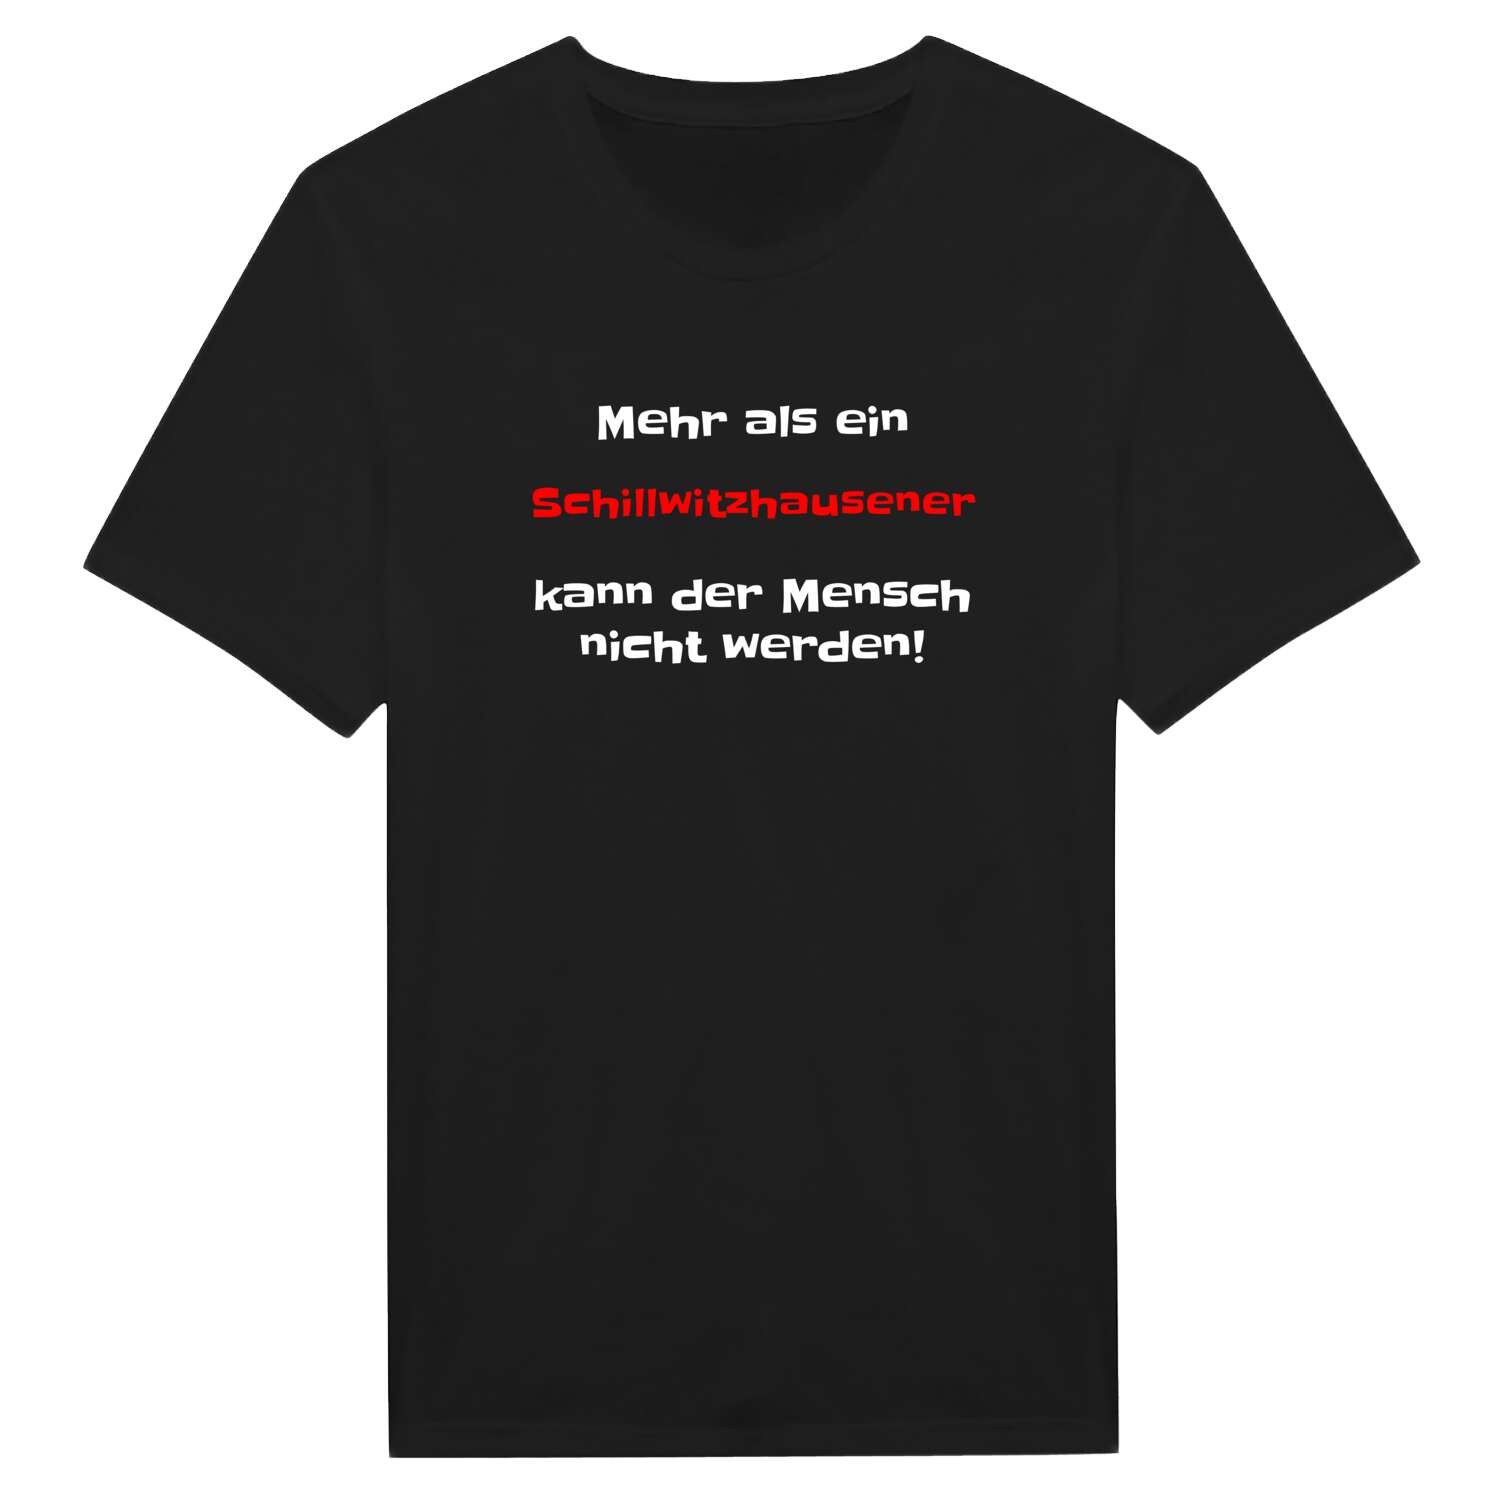 Schillwitzhausen T-Shirt »Mehr als ein«